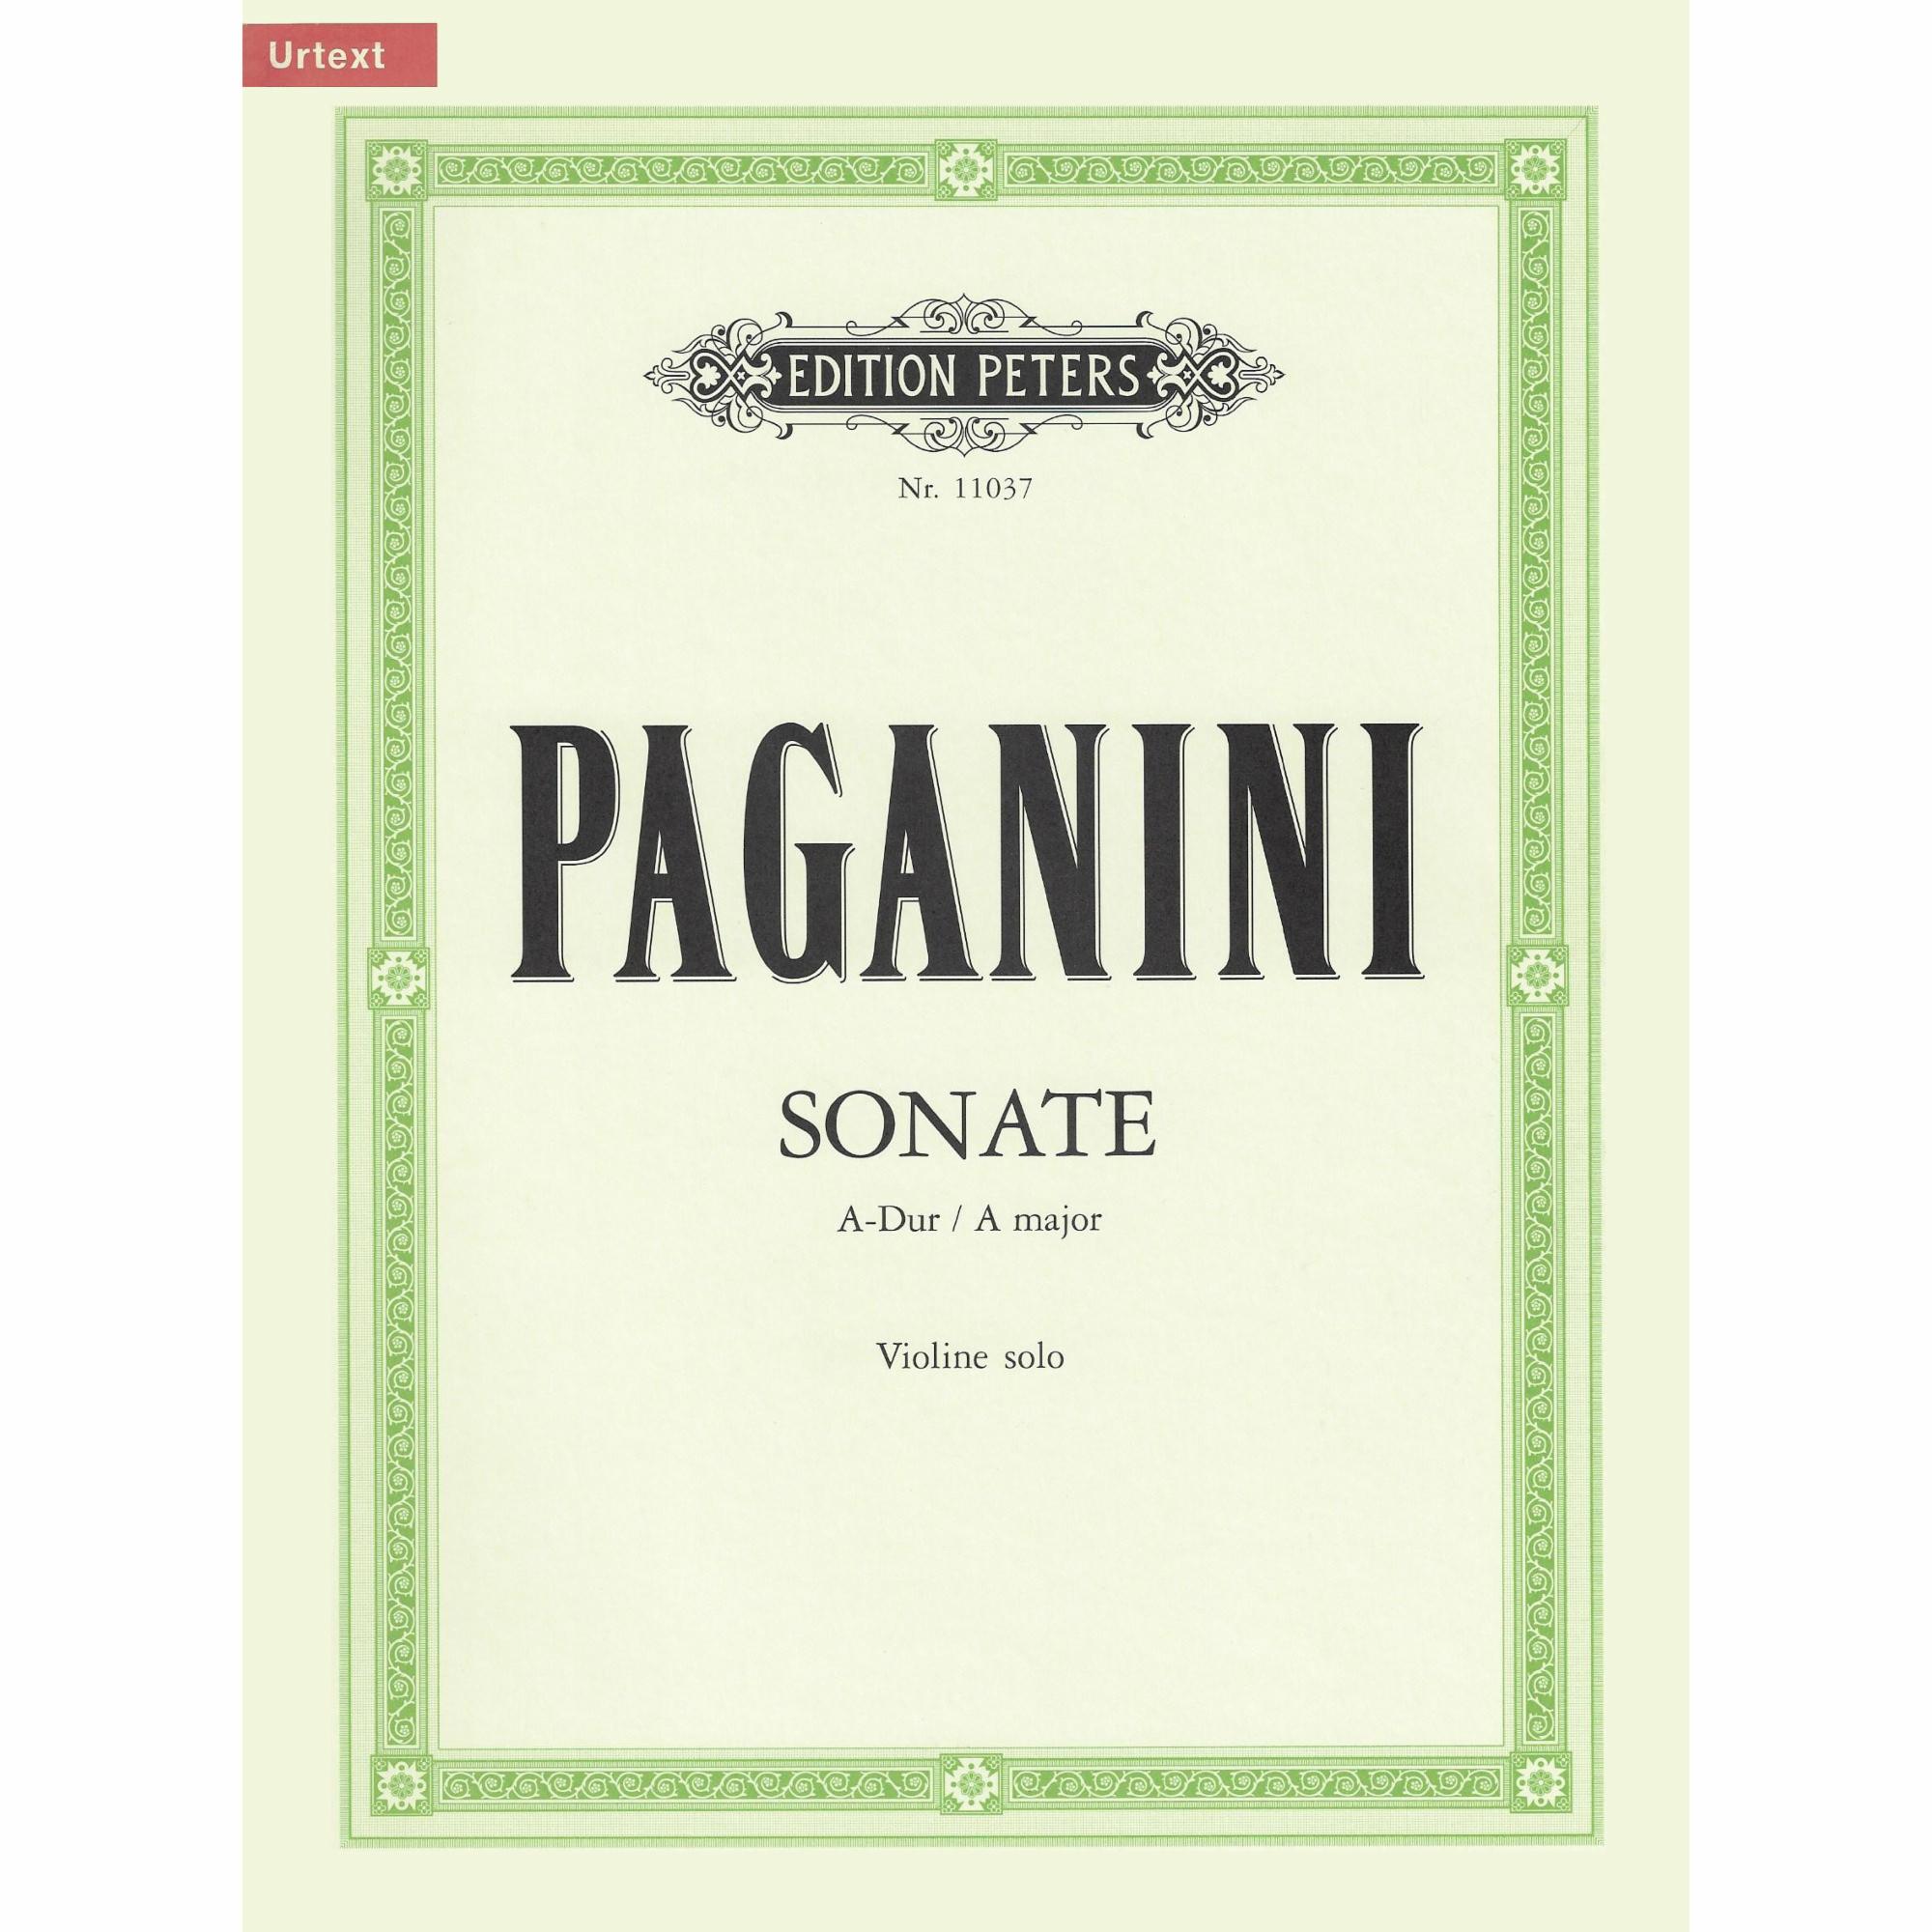 Paganini -- Sonata in A Major for Solo Violin